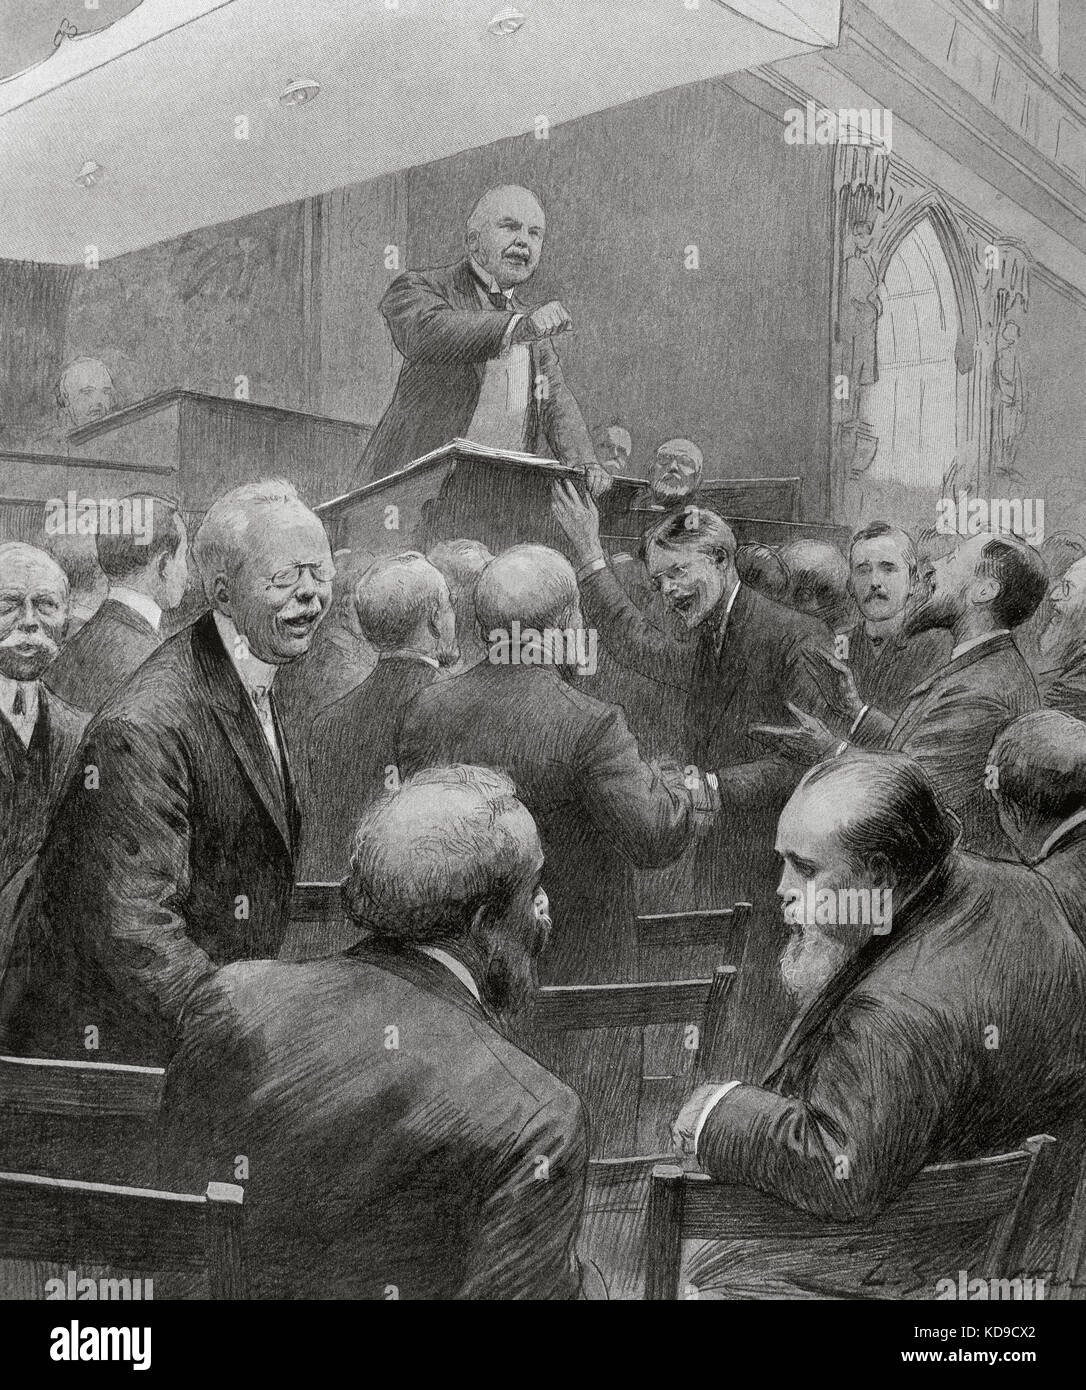 Henry campbell-bannerman, (1836-1908) político del partido liberal británico. se desempeñó como primer ministro del Reino Unido (1905-1908) y fue líder del partido liberal (1899-1908). Discurso de sir Henry Campbell en Westminster, Londres. grabado. 'L'ilustración', de 1906. Foto de stock